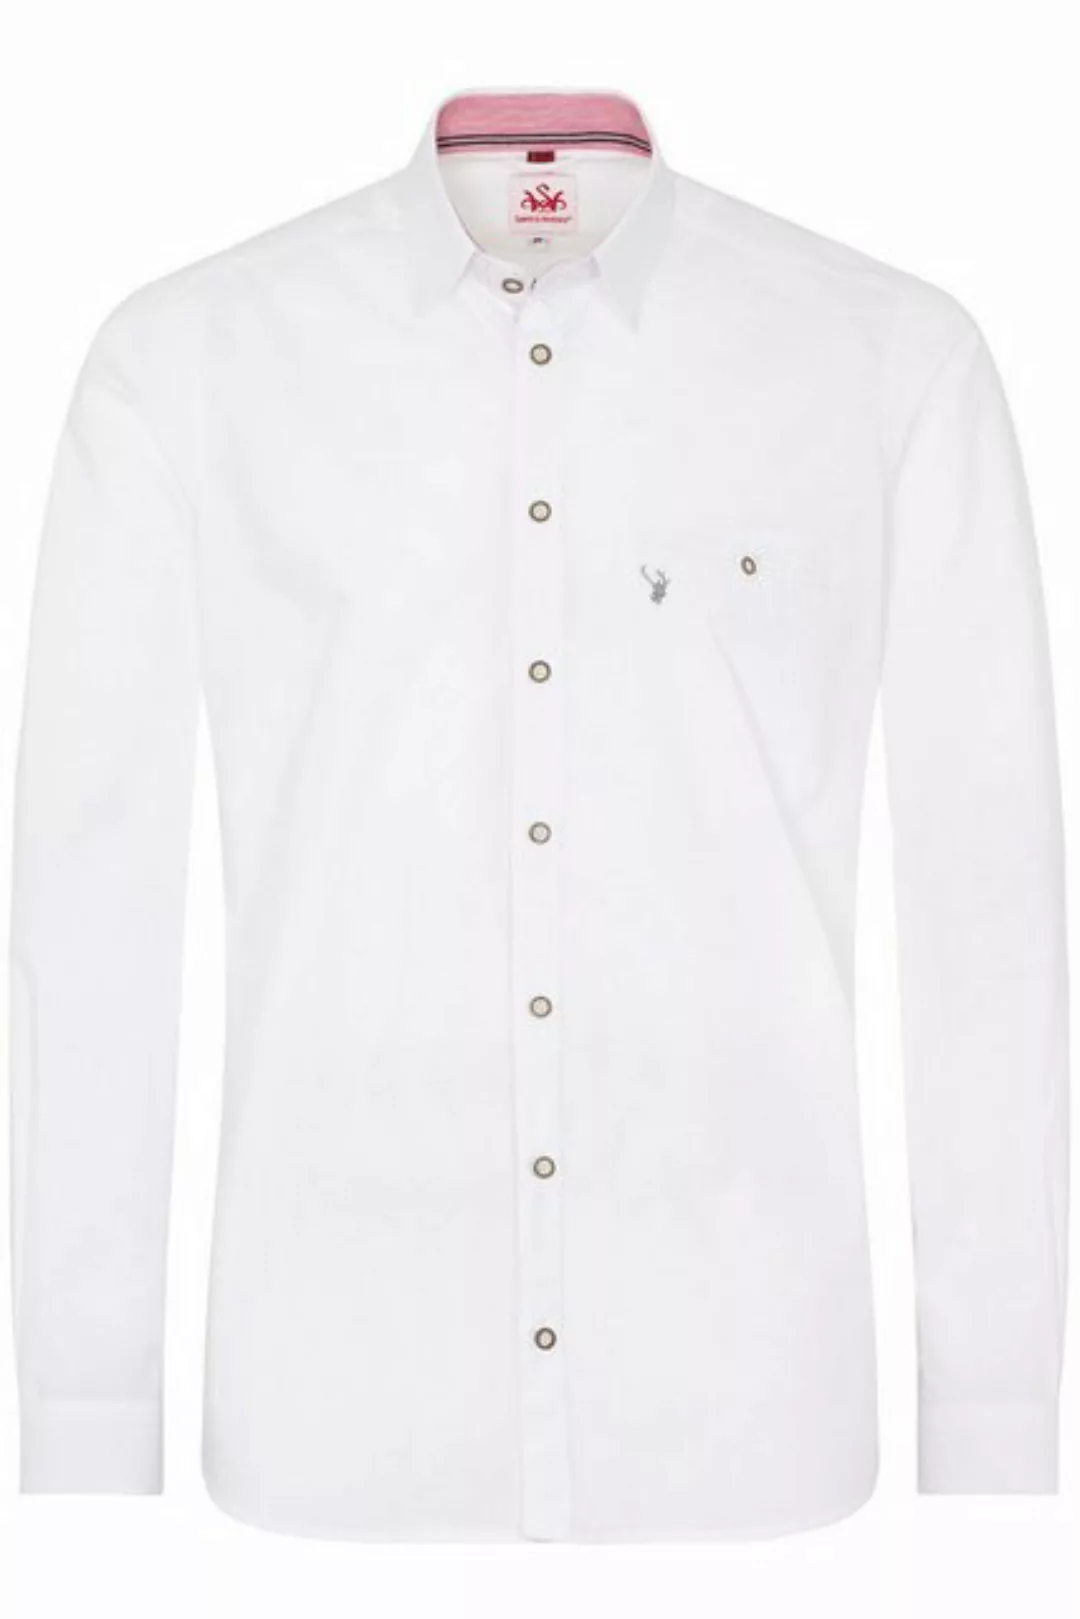 Spieth & Wensky Trachtenhemd Trachtenhemd - PERDIX - weiß/rot, weiß/grau günstig online kaufen